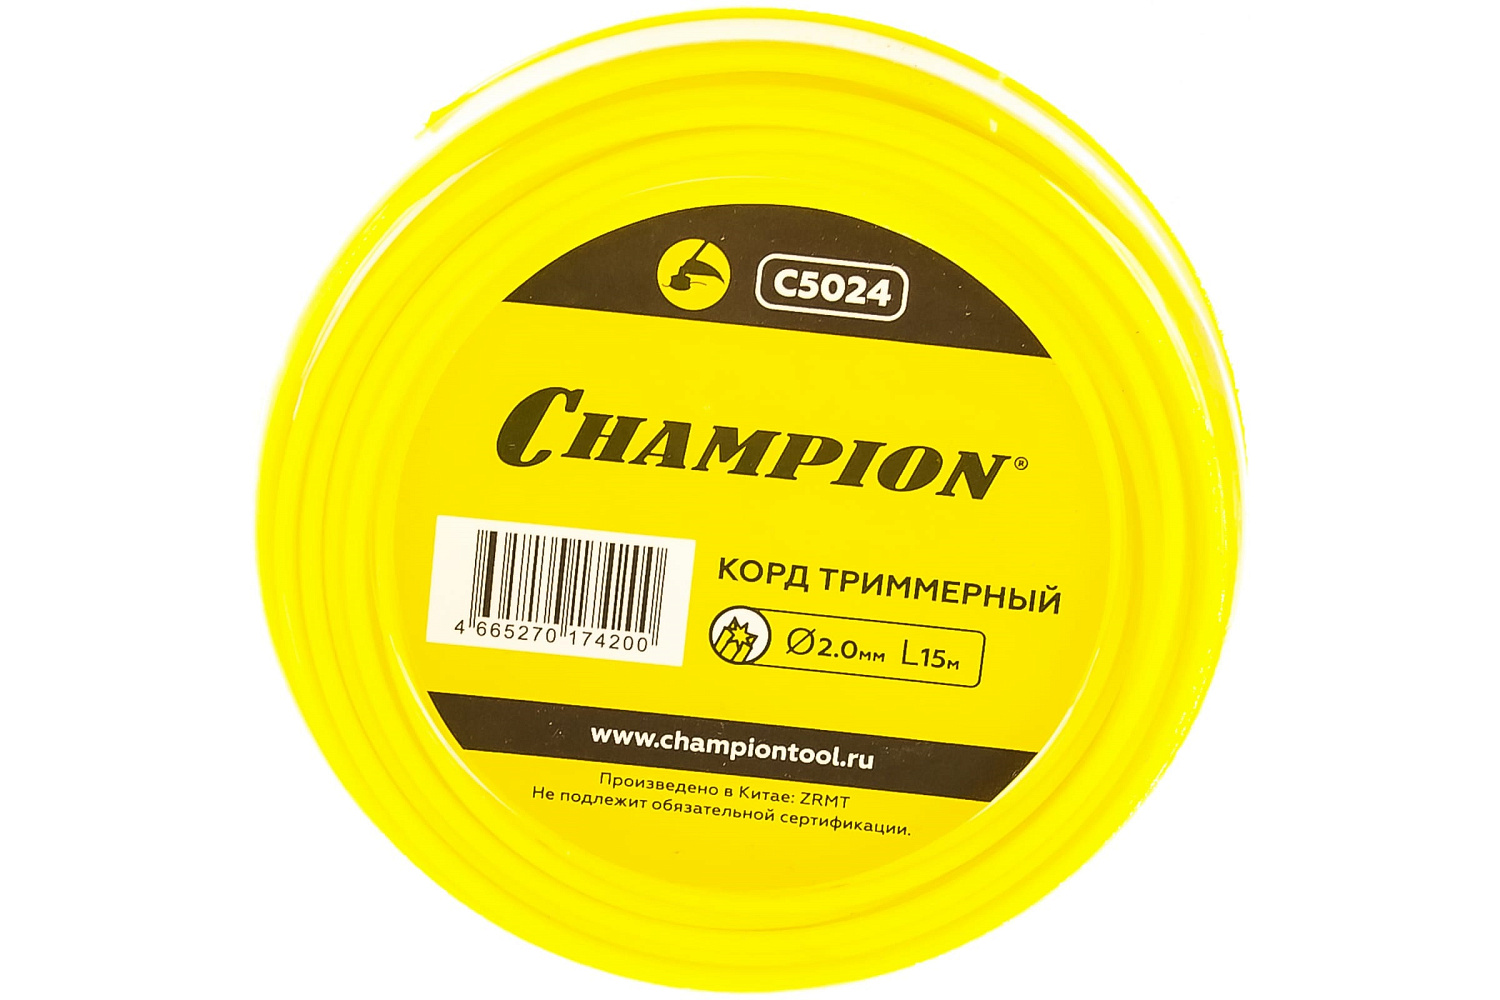 Леска Champion ф 2.0мм* 15м (звезда) C5024